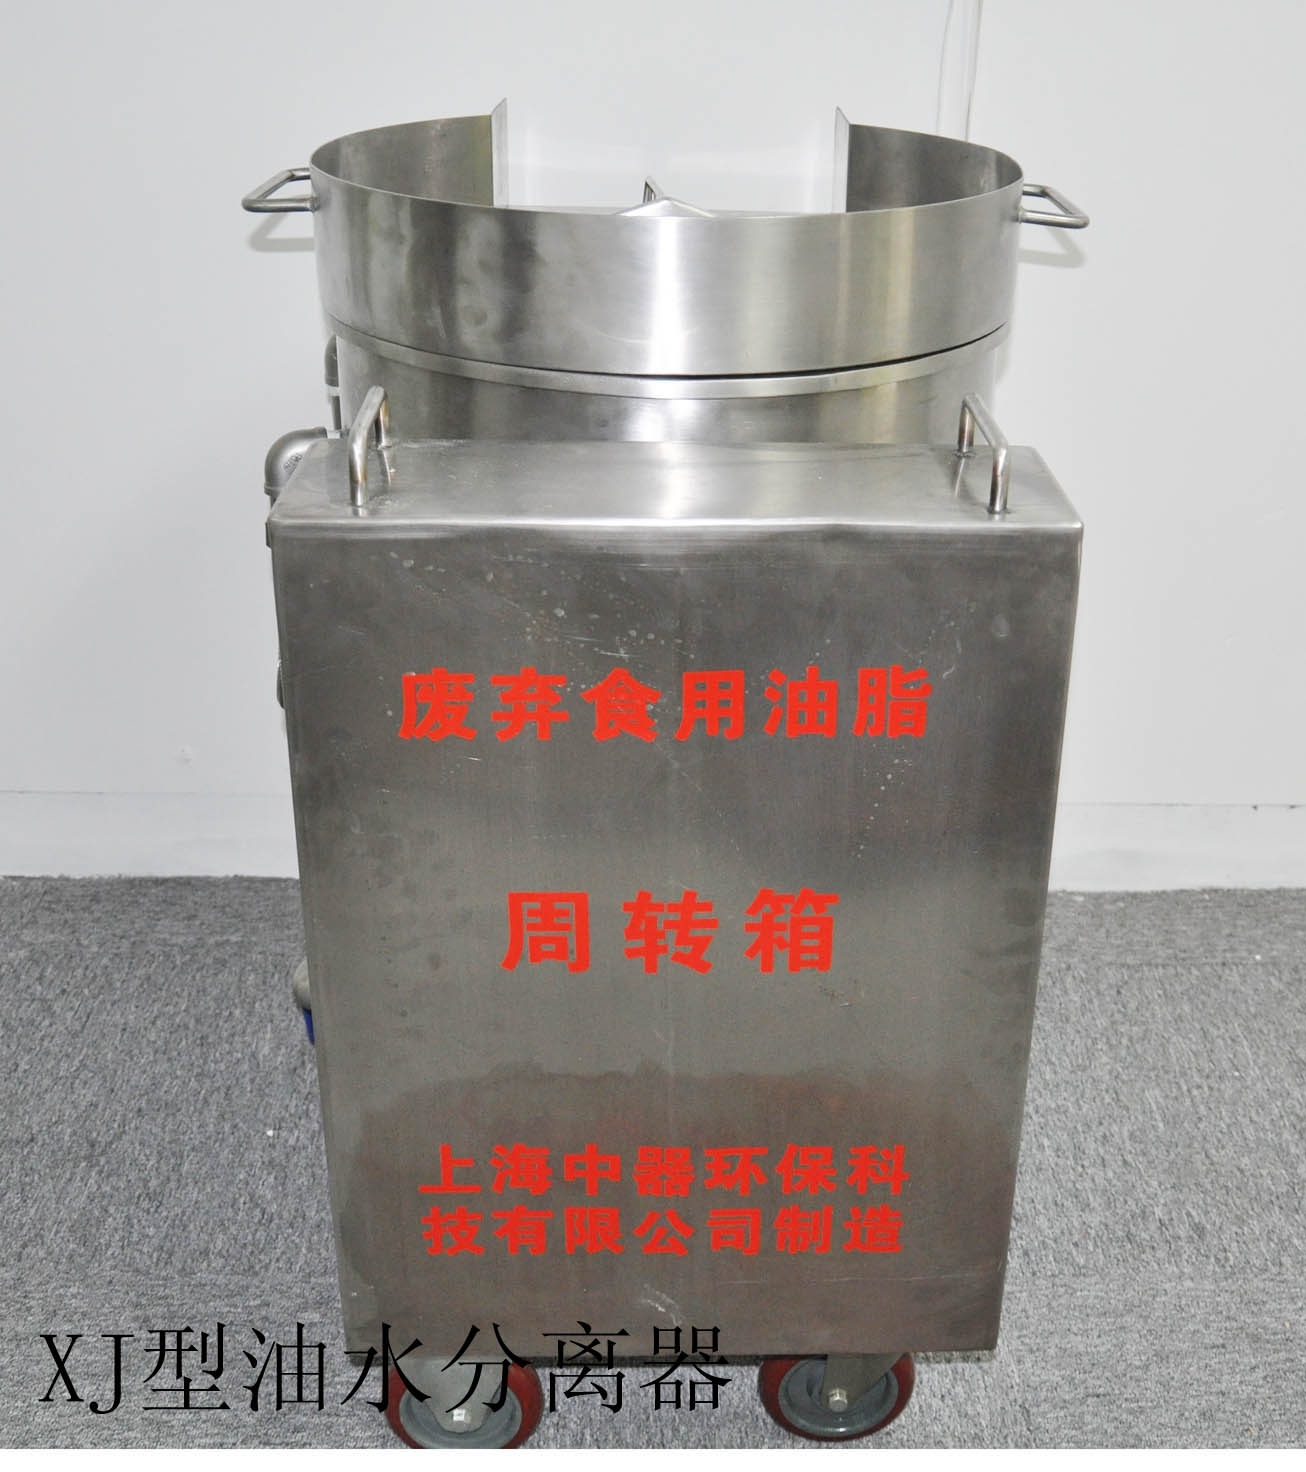 上海手推车型油水分离器火锅店专用、可移动型、报价低